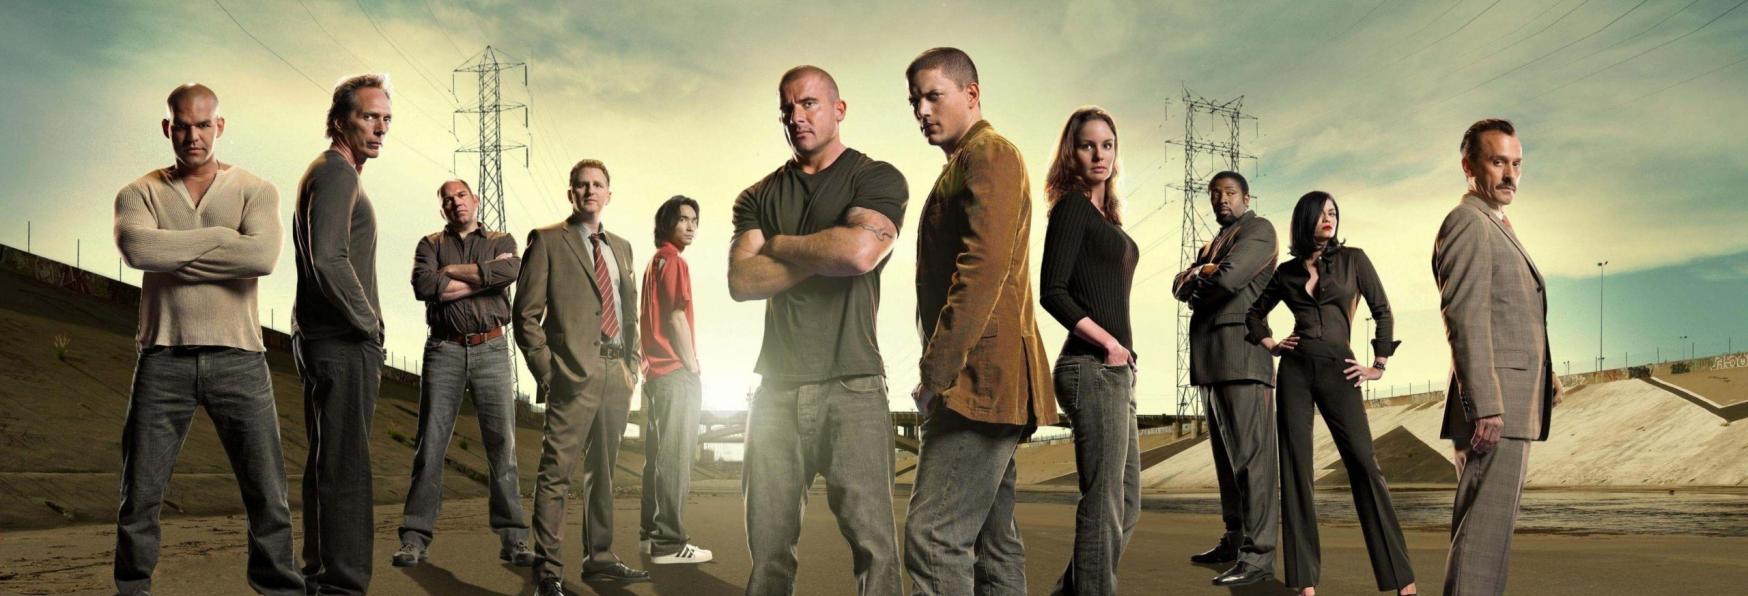 Prison Break 6 ci sarà! Presto in arrivo la Nuova Stagione dell'amata Serie TV Netflix